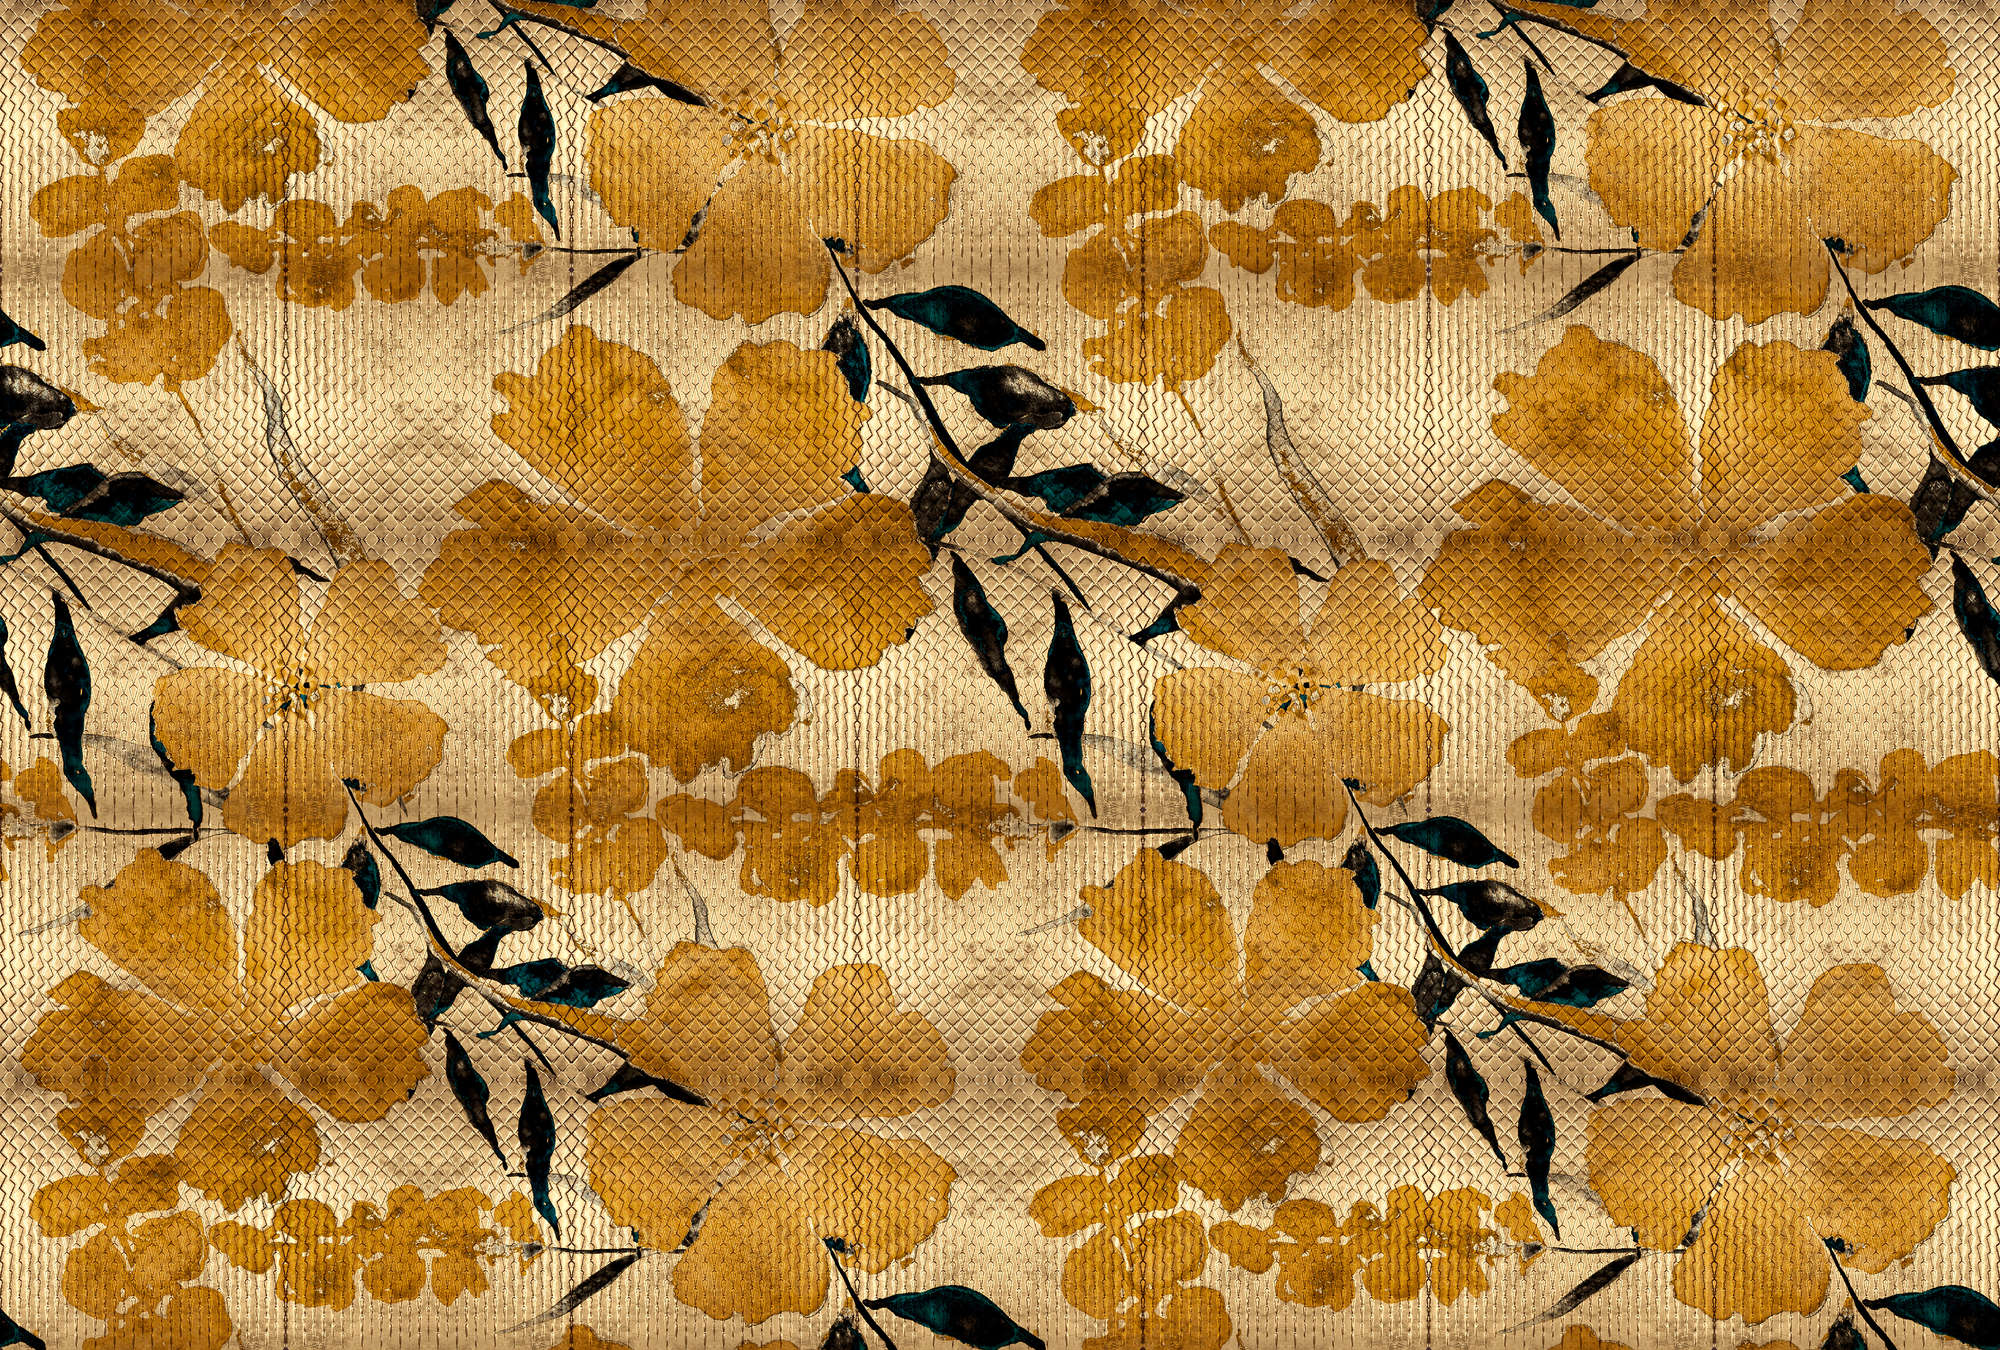             Odessa 1 - Metallic fotobehang met kersenbloesem patroon in goud
        